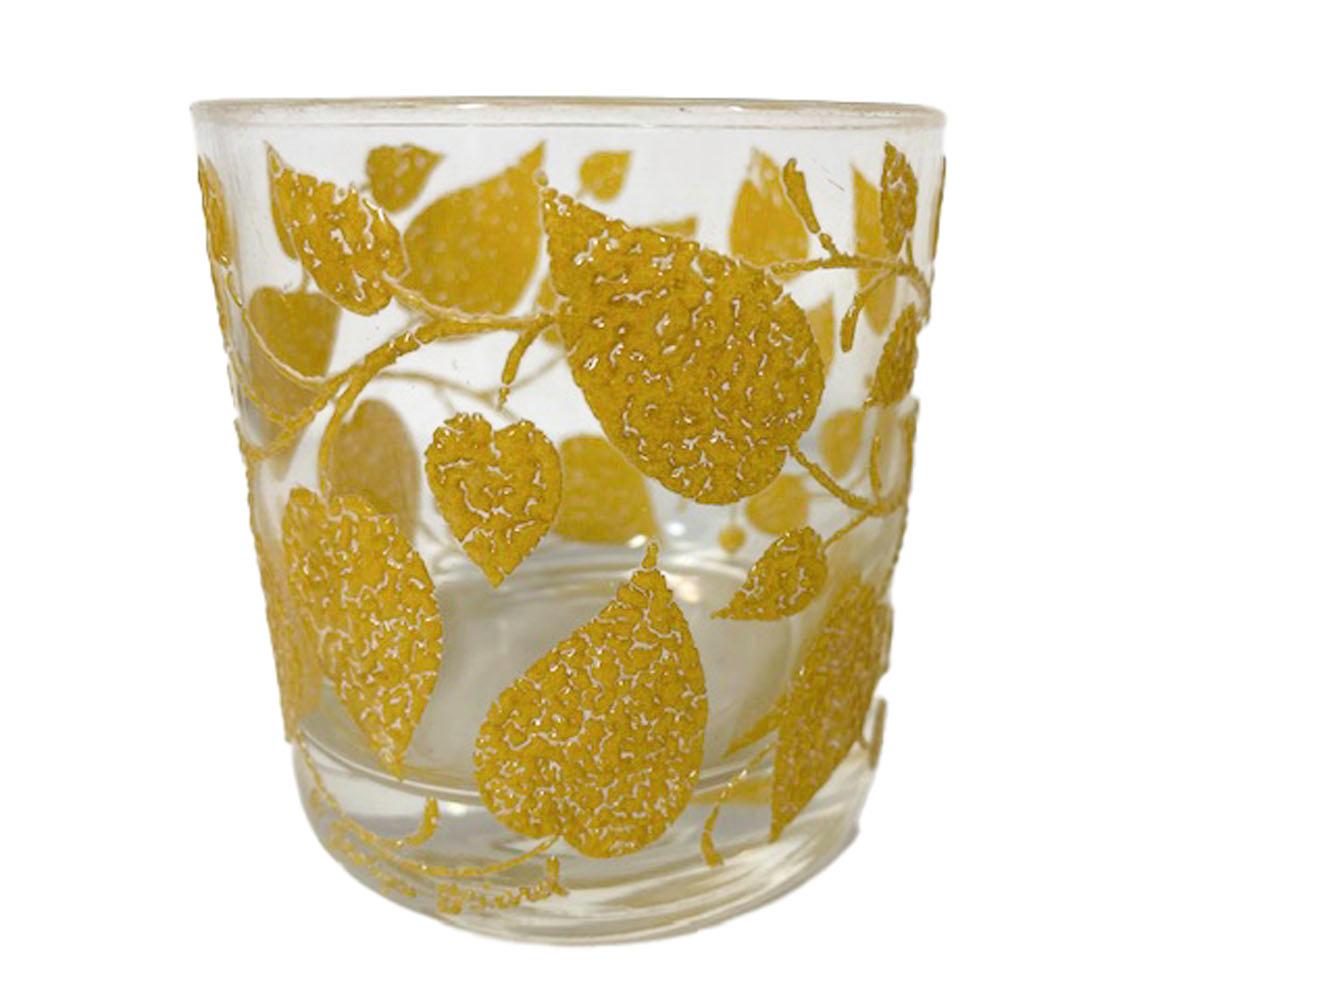 Quatre verres à pied vintage conçus par Georges Briard, décorés de vignes et de feuilles en forme de cœur en émail texturé jaune en relief créant un effet 